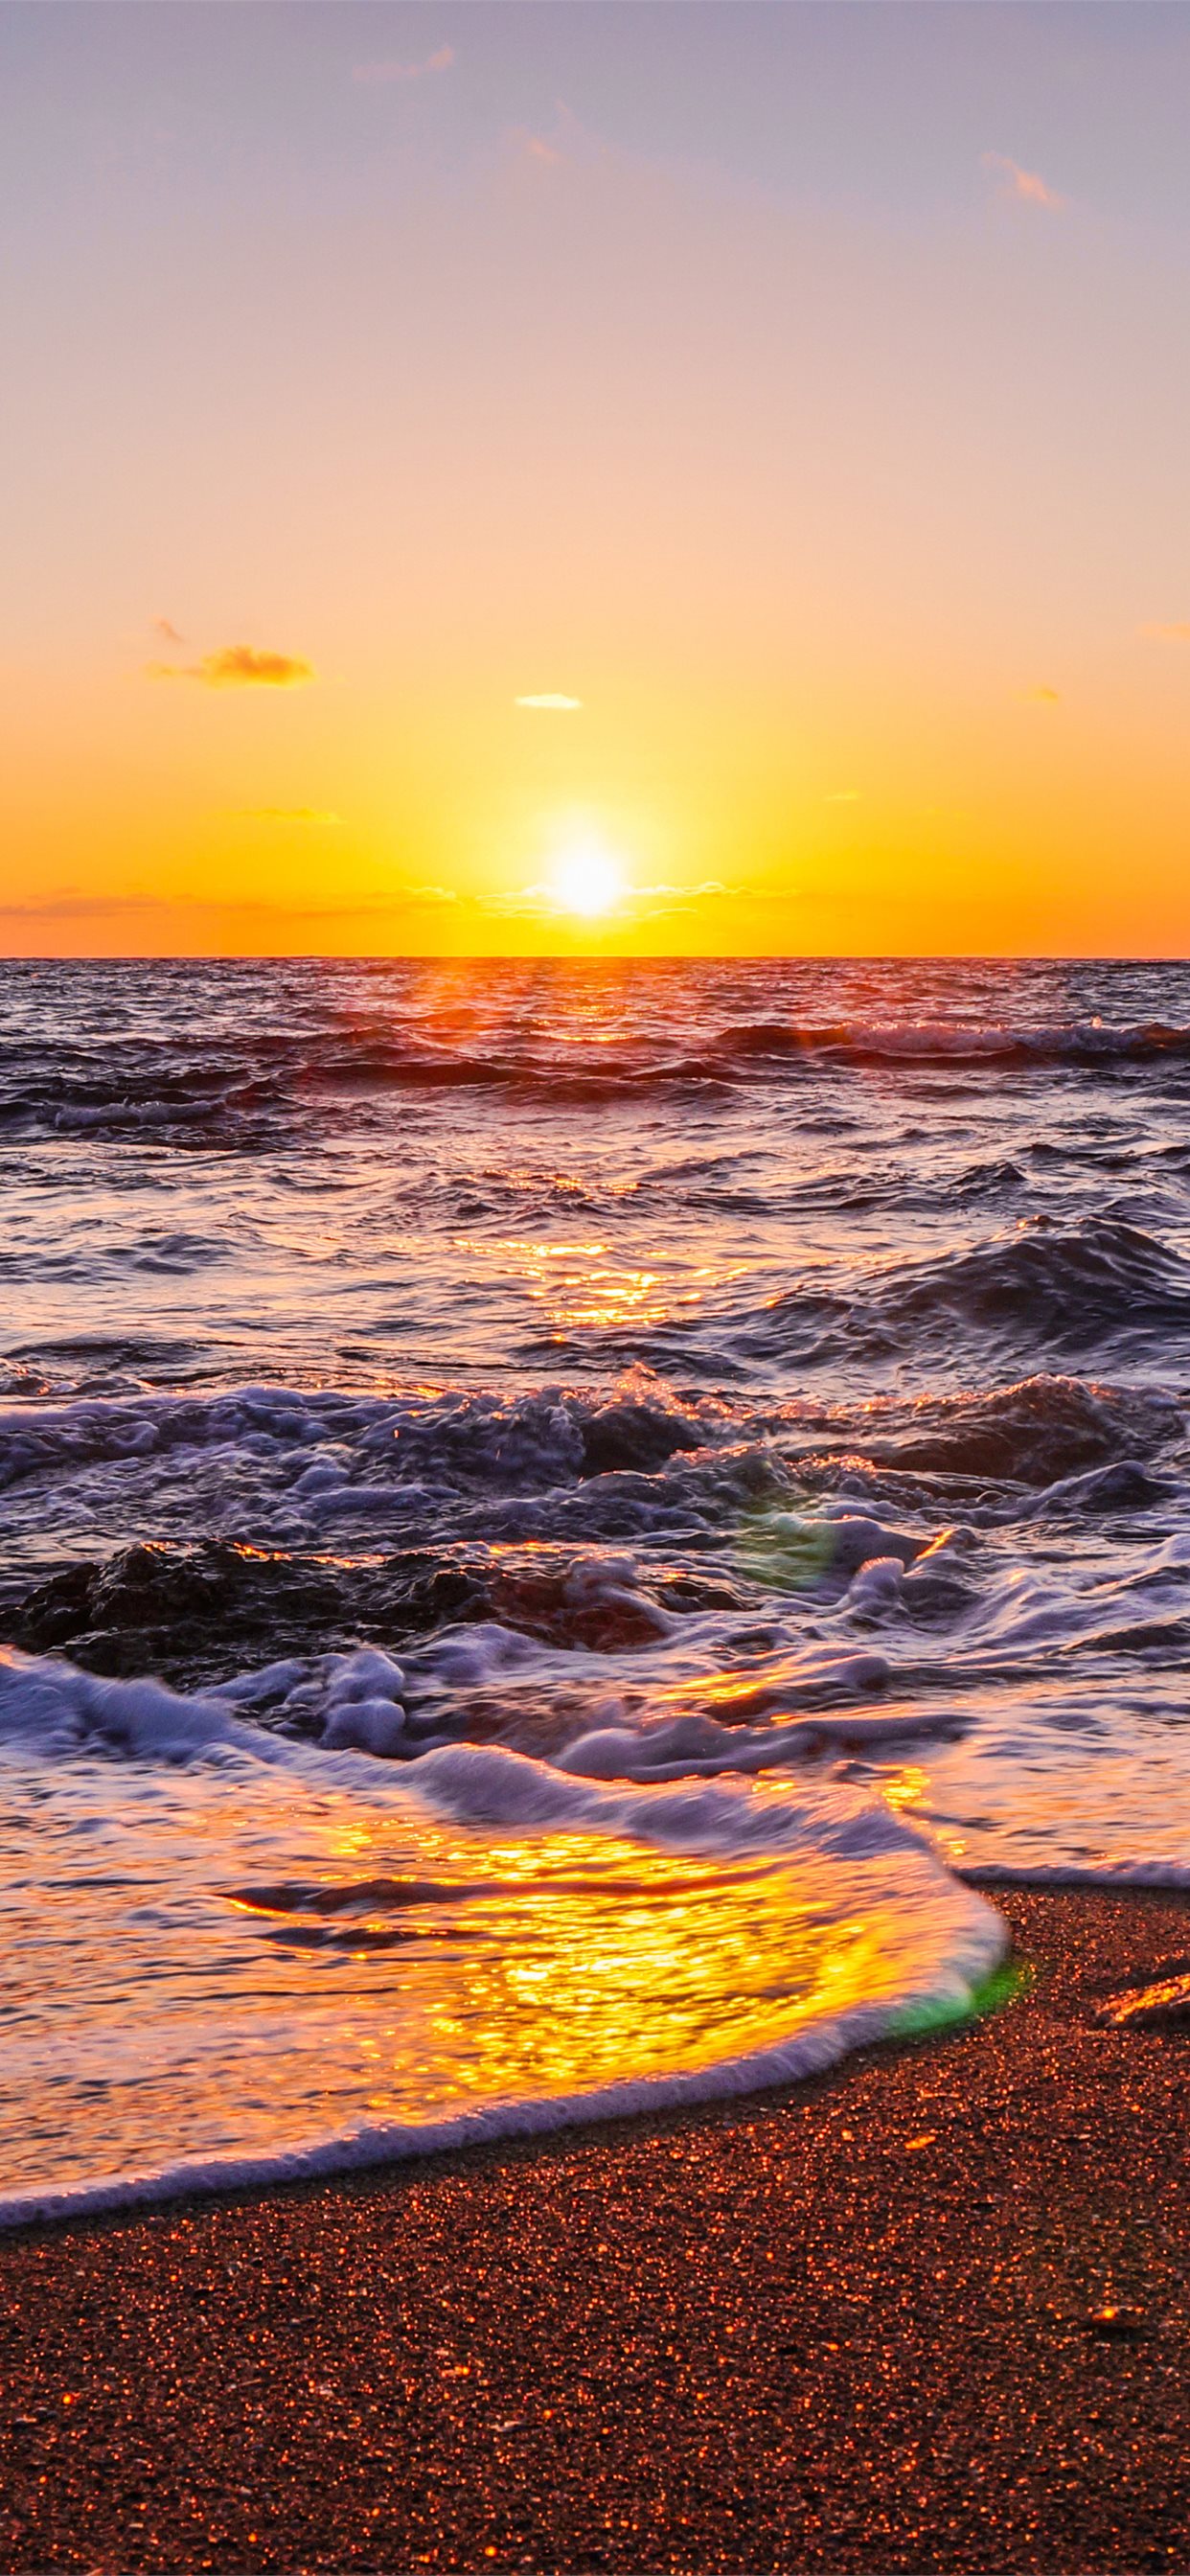 Sunset Wallpaper Iphone Beach Sunset Wallpaper Iphone Hawaii - Stunning Ocean Sunset iPhone 6